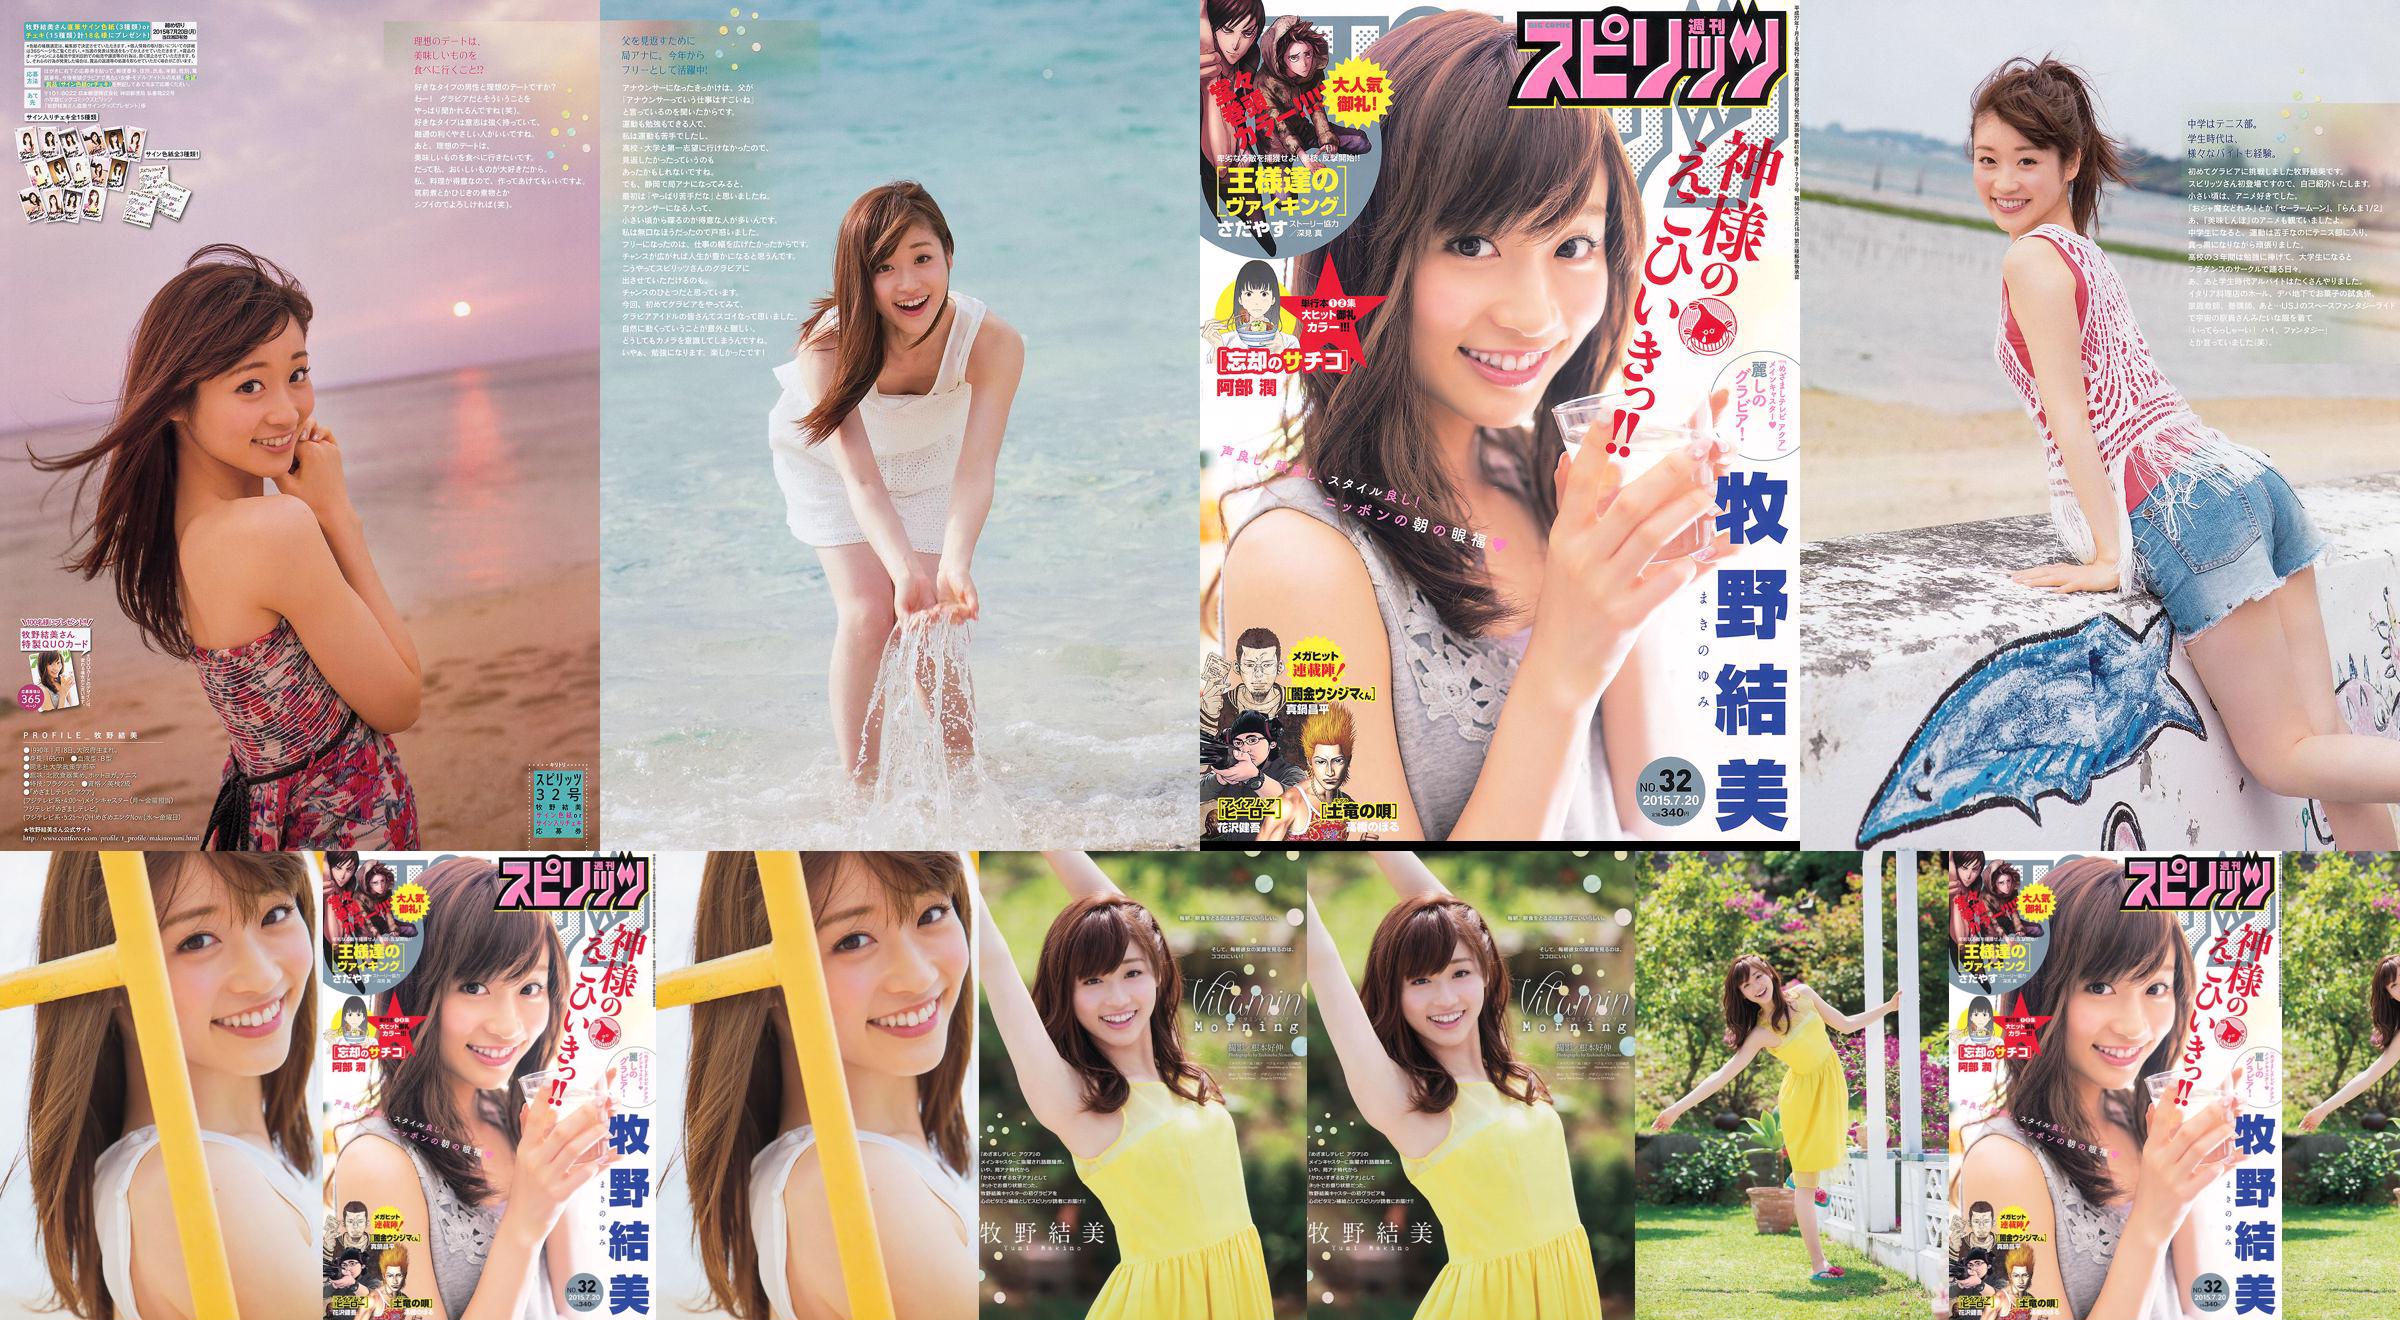 [Weekly Big Comic Spirits] Yumi Makino 2015 No.32 Photo Magazine No.c1a900 Page 2